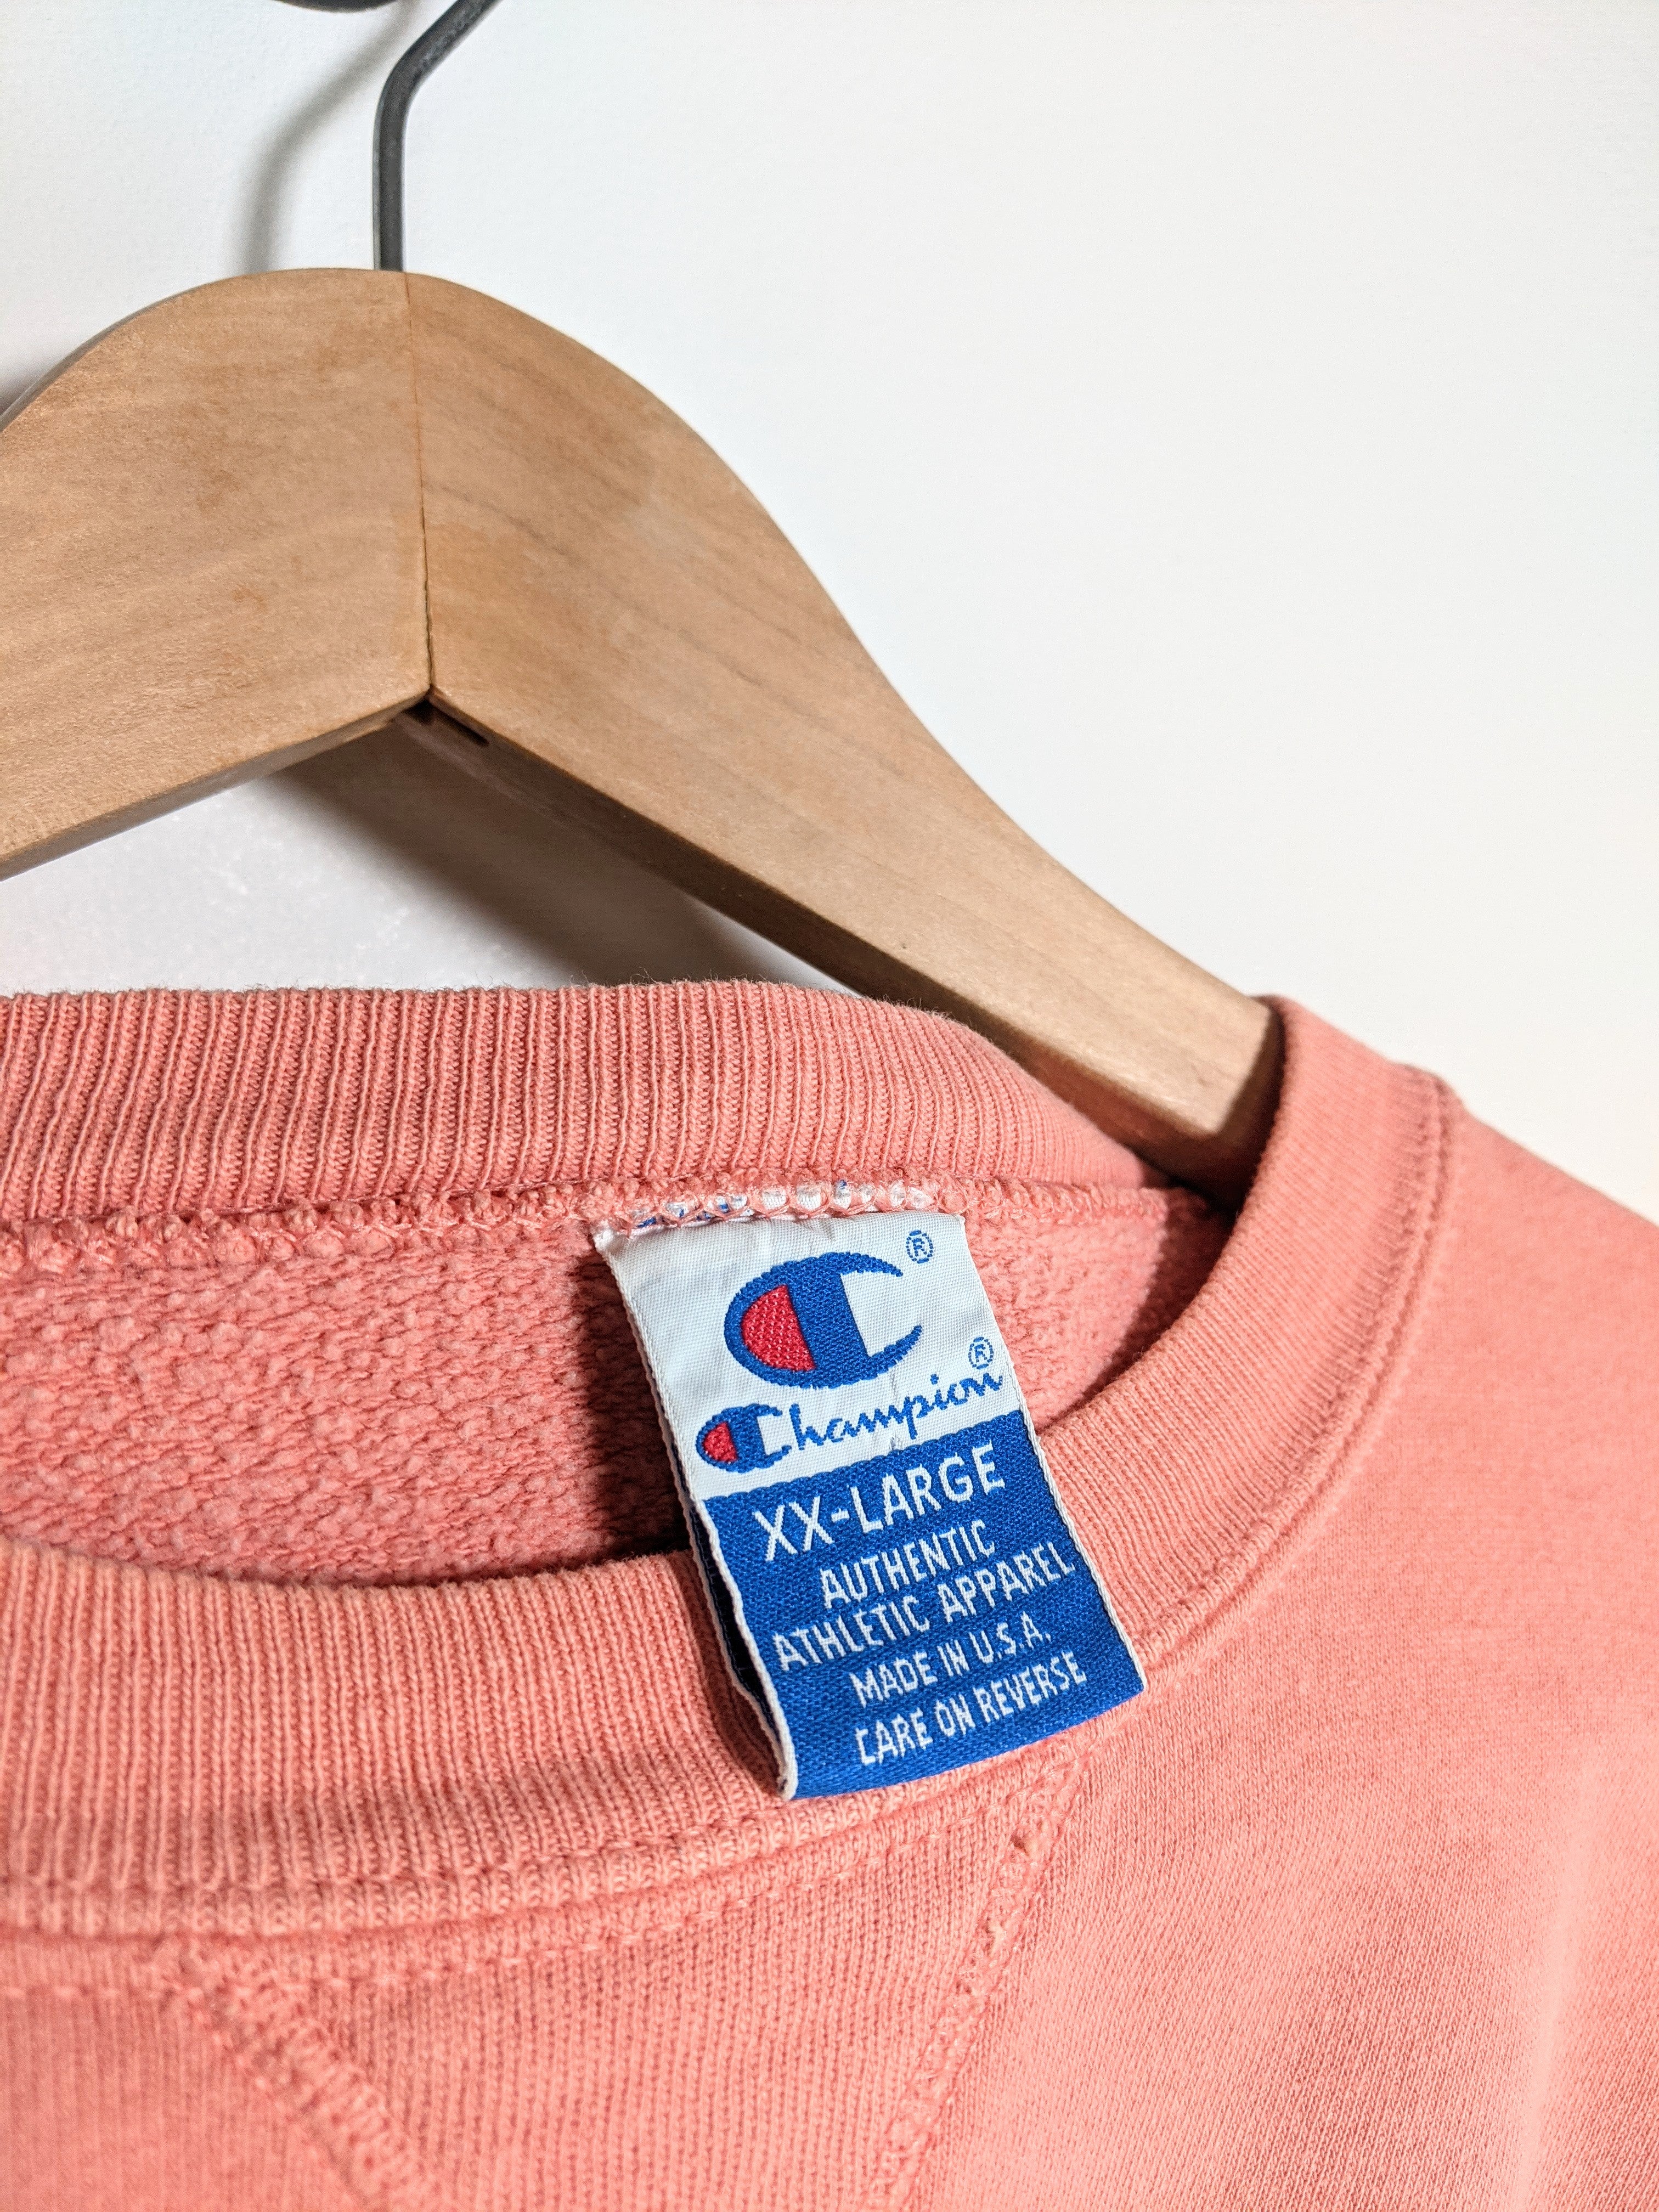 Erobre overtale Hvor Best Online Vintage clothing store! – Vintage Clout